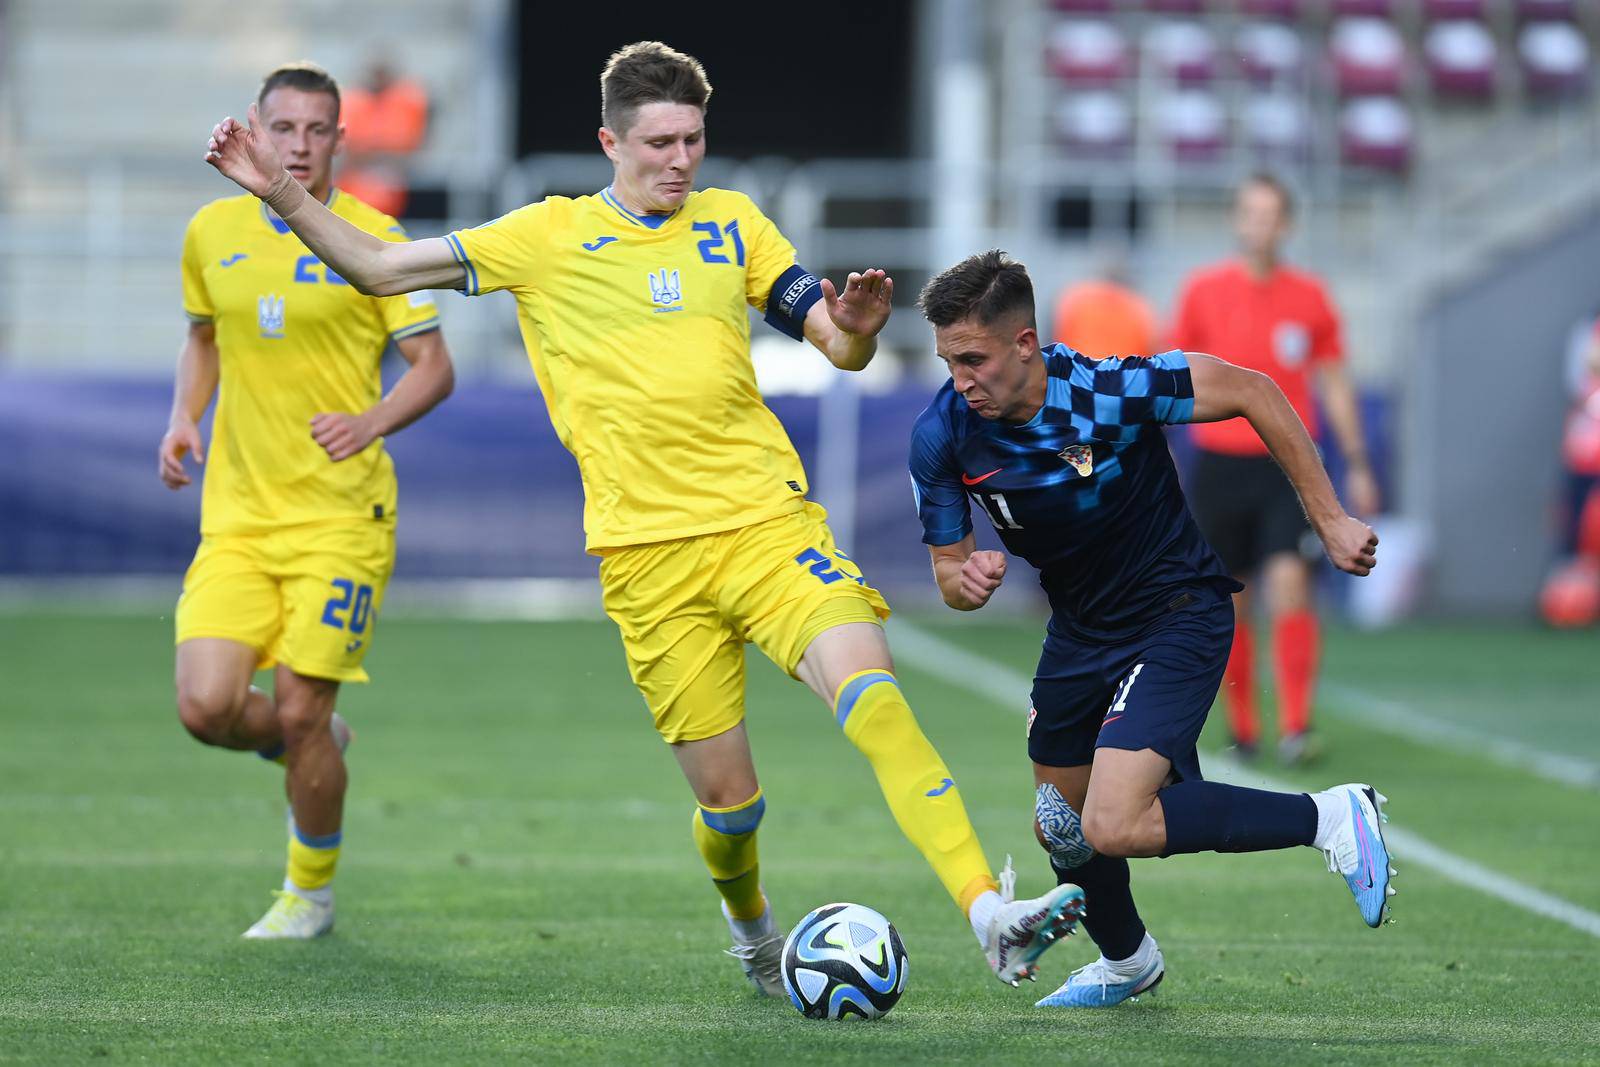 Hrvatska U-21 reprezentacija protiv Ukrajine igra prvu utakmicu na Europskom prvenstvu za mlade